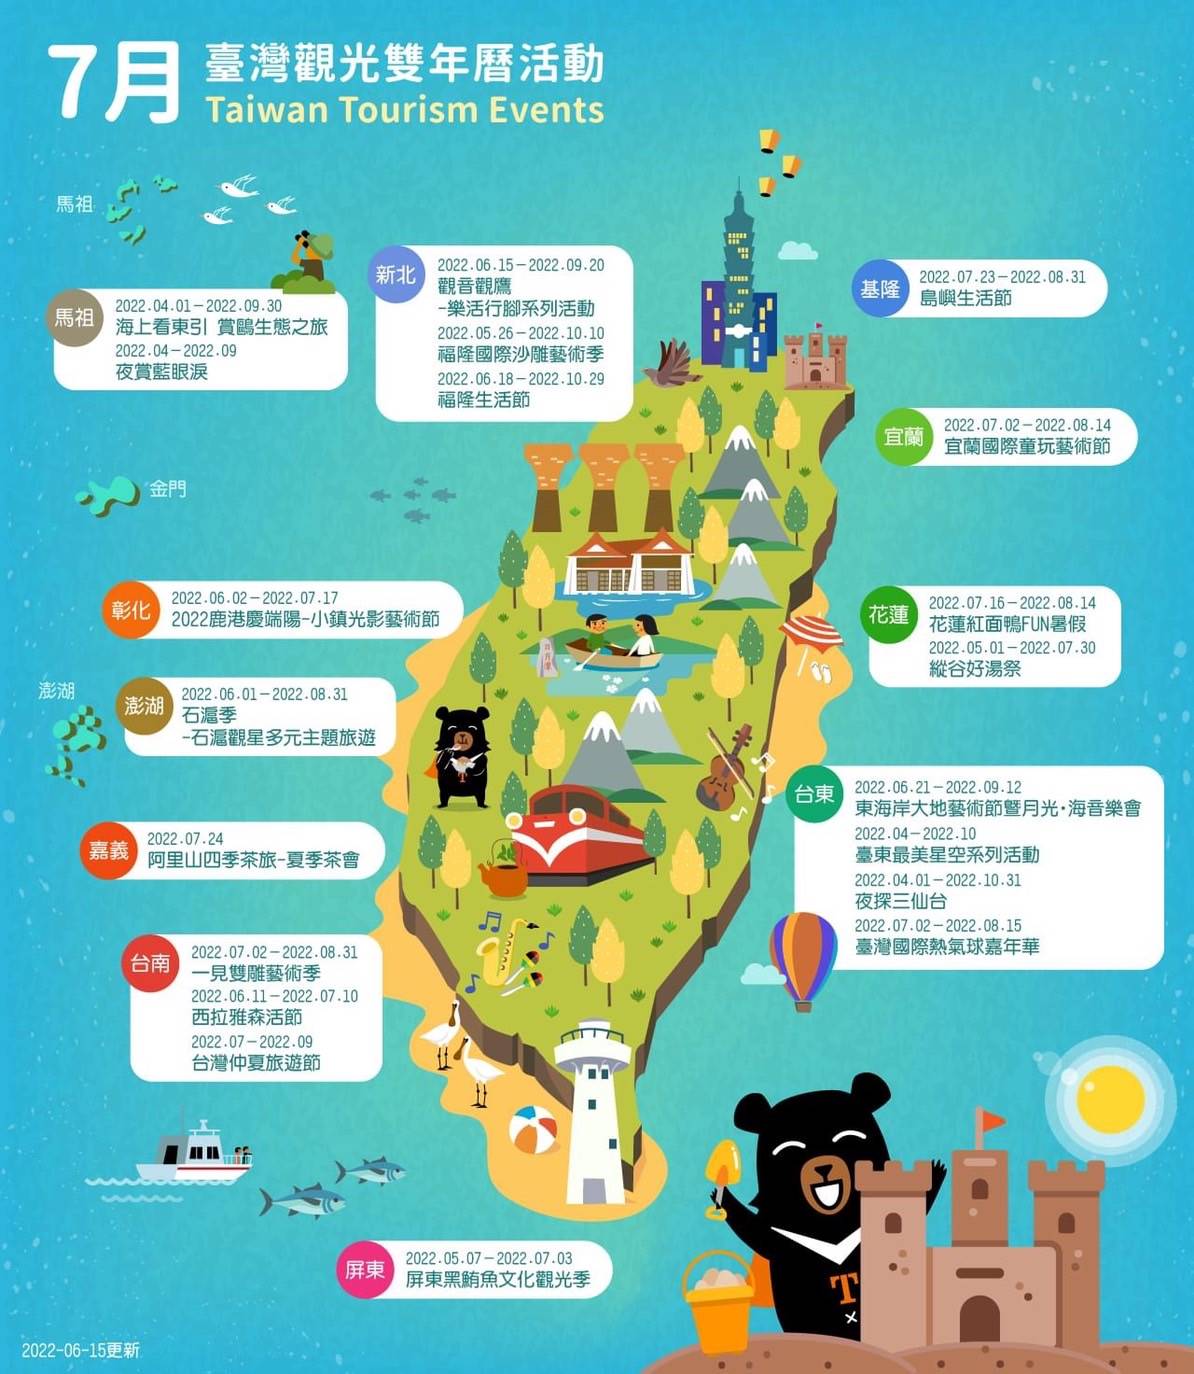 臺灣觀光雙年曆活動。